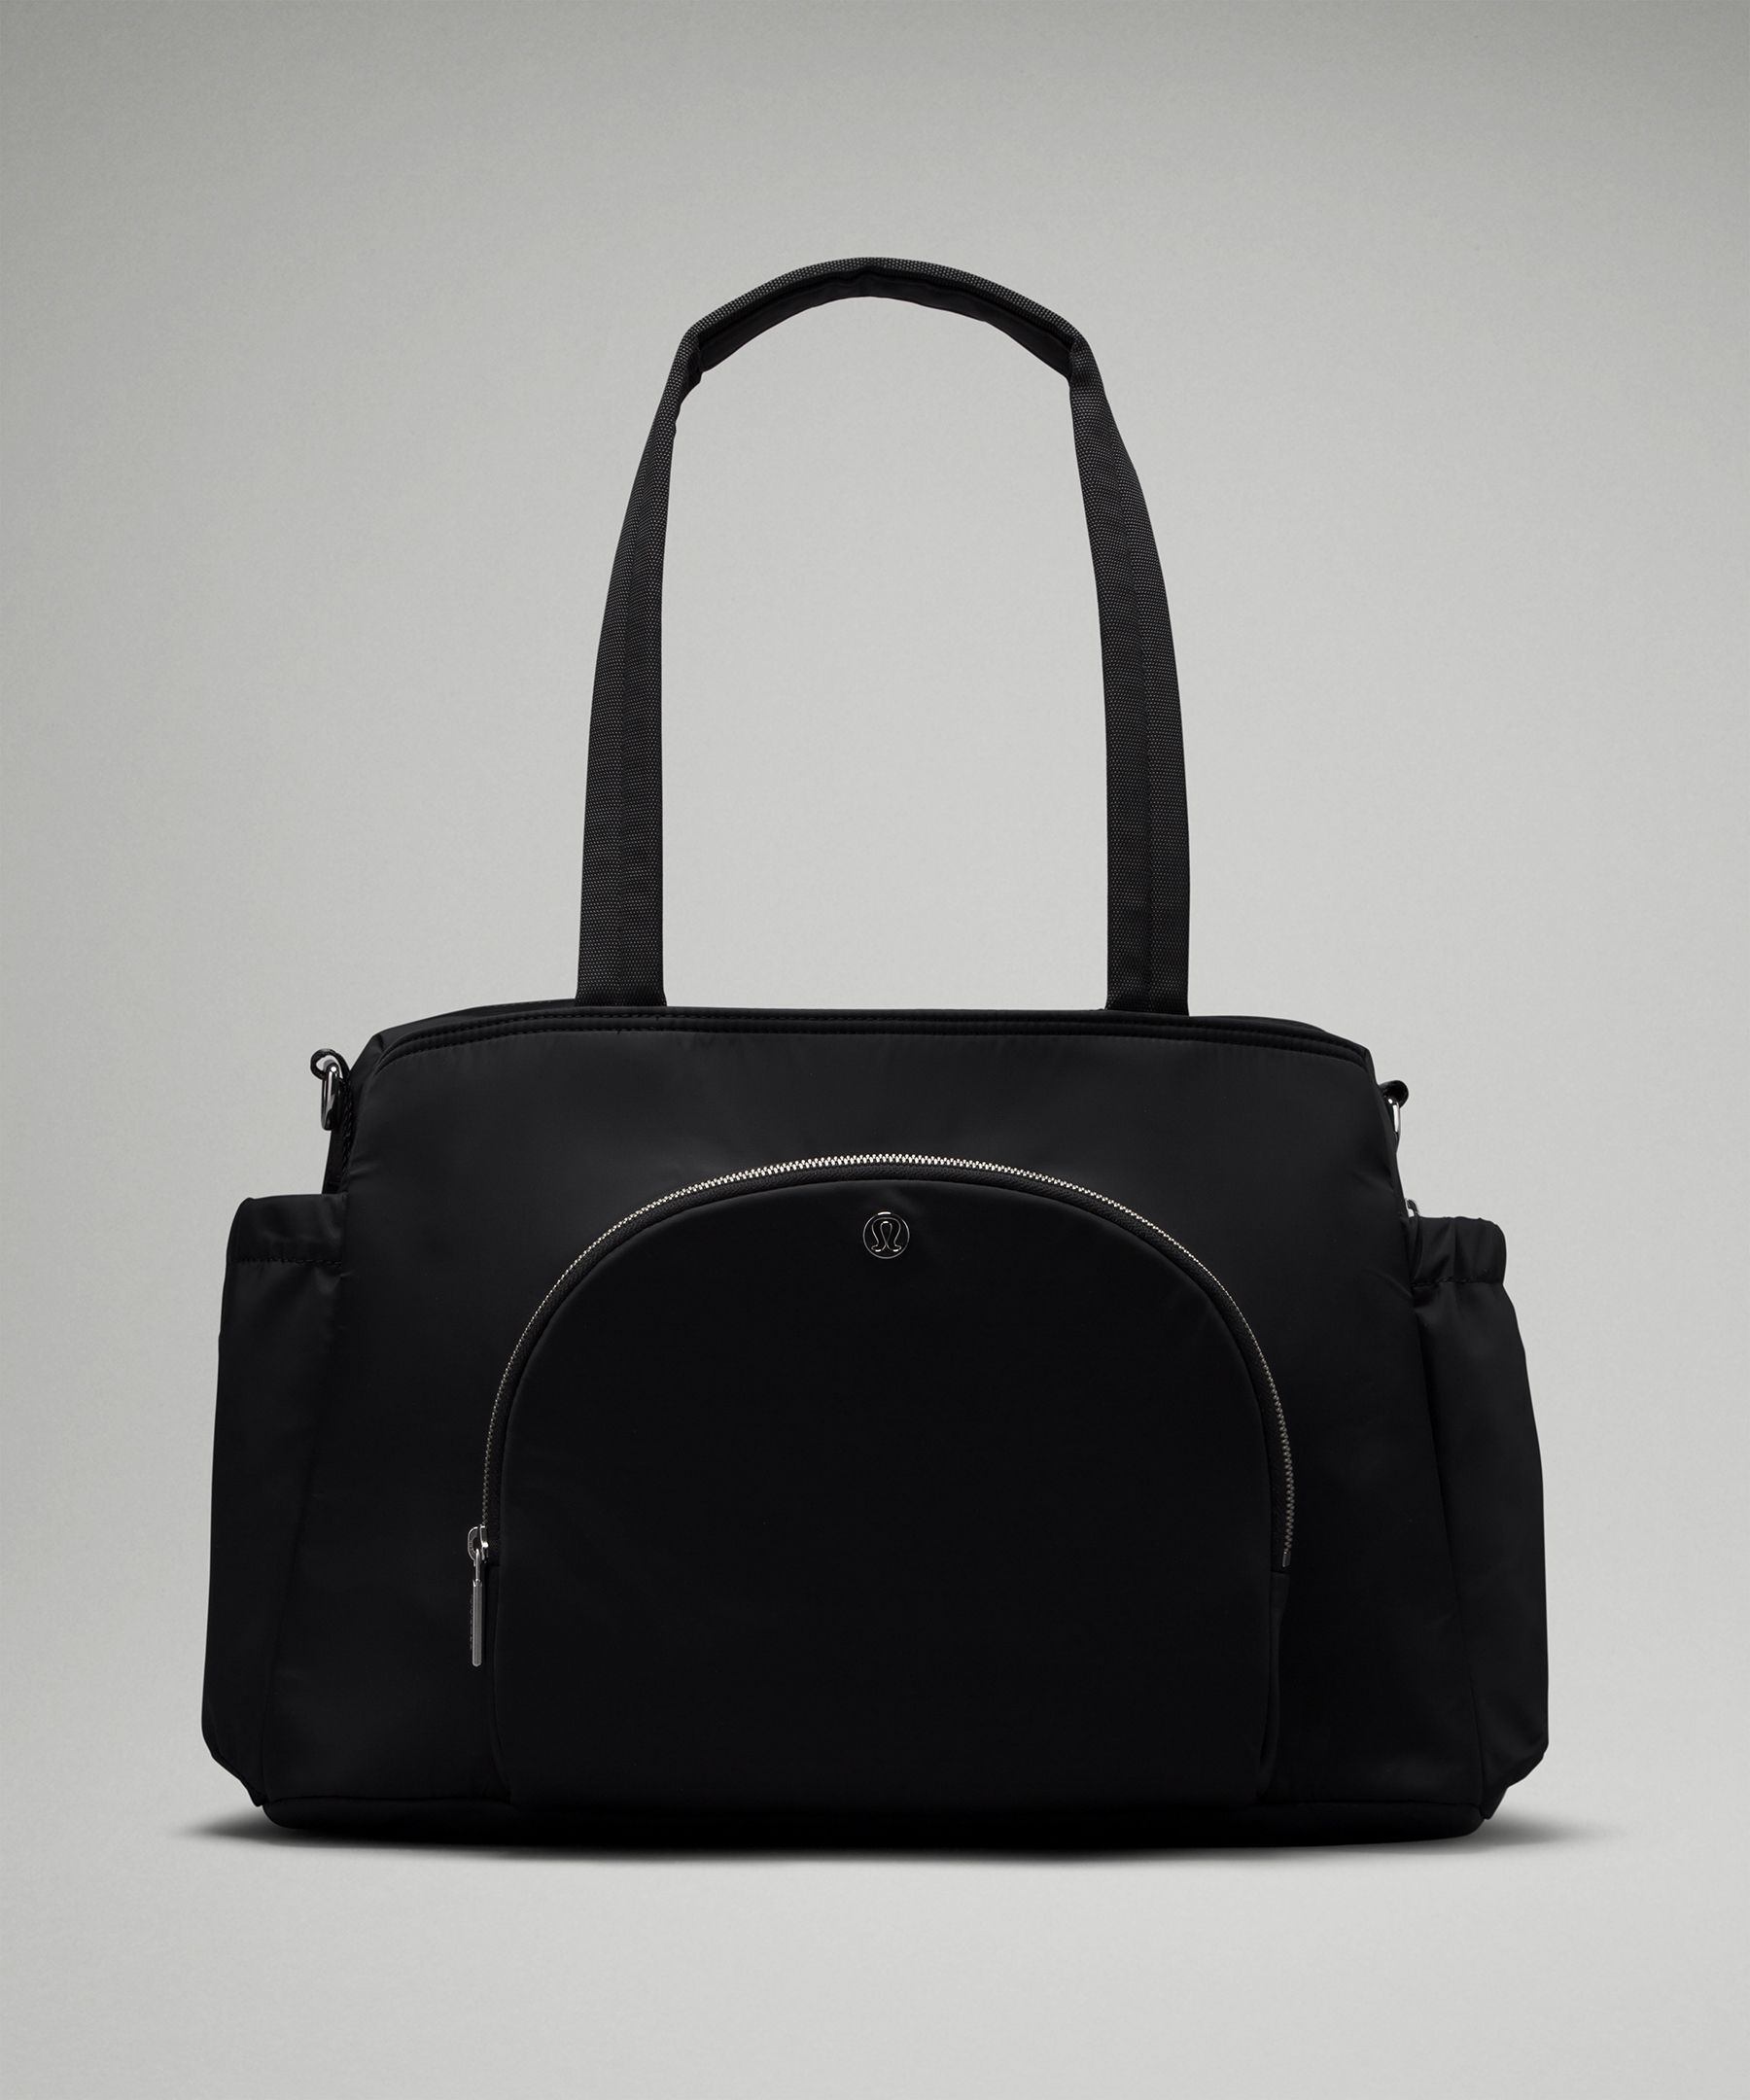 Lululemon New Parent Tote Bag 20l In Black